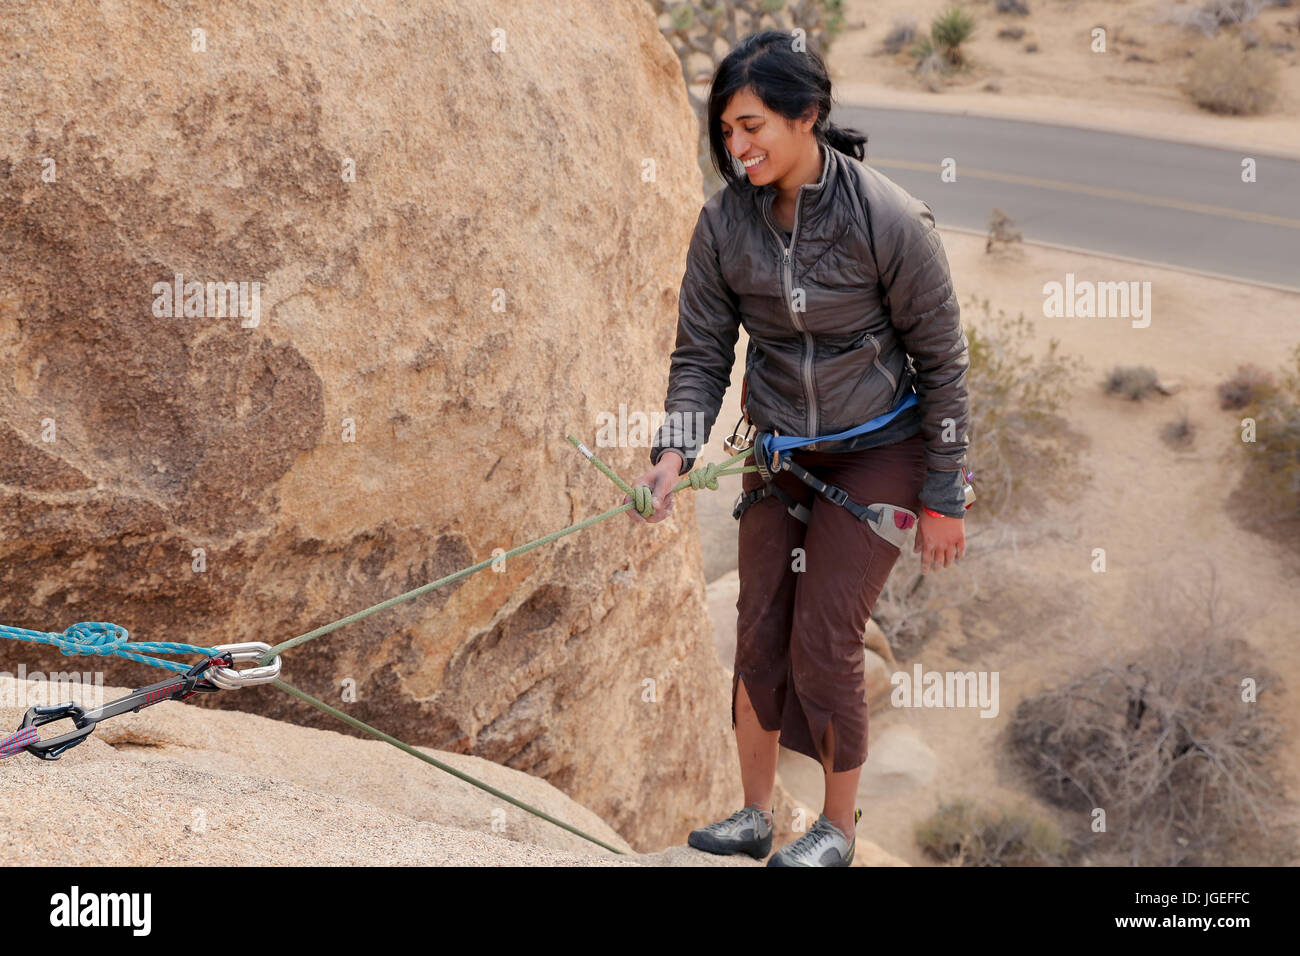 Mujer joven del sur asiático escaladas en roca el desierto en una pared muy difícil Foto de stock